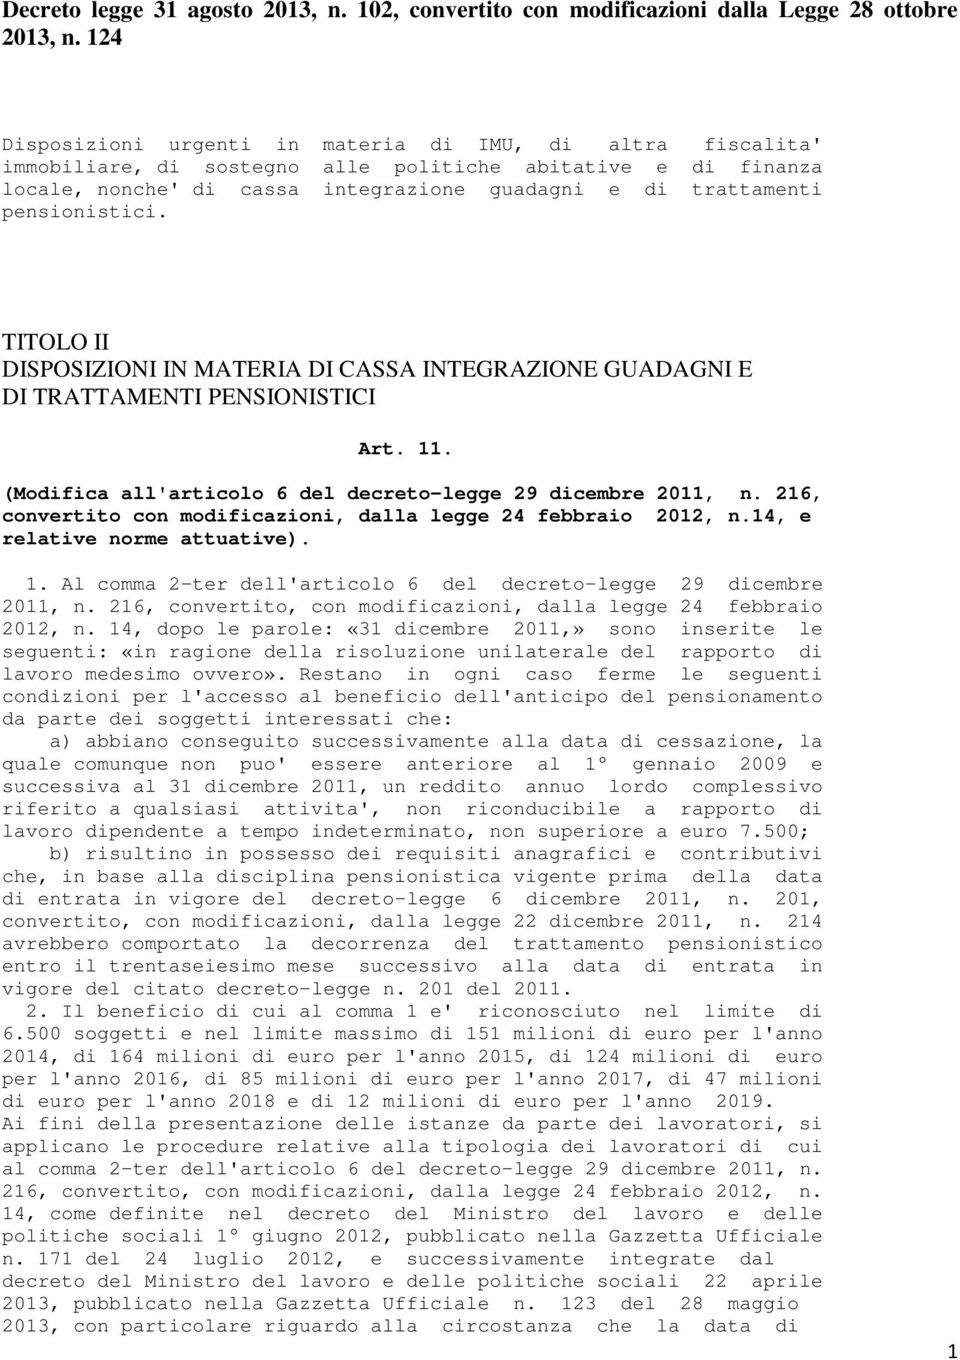 pensionistici. TITOLO II DISPOSIZIONI IN MATERIA DI CASSA INTEGRAZIONE GUADAGNI E DI TRATTAMENTI PENSIONISTICI Art. 11. (Modifica all'articolo 6 del decreto-legge 29 dicembre 2011, n.